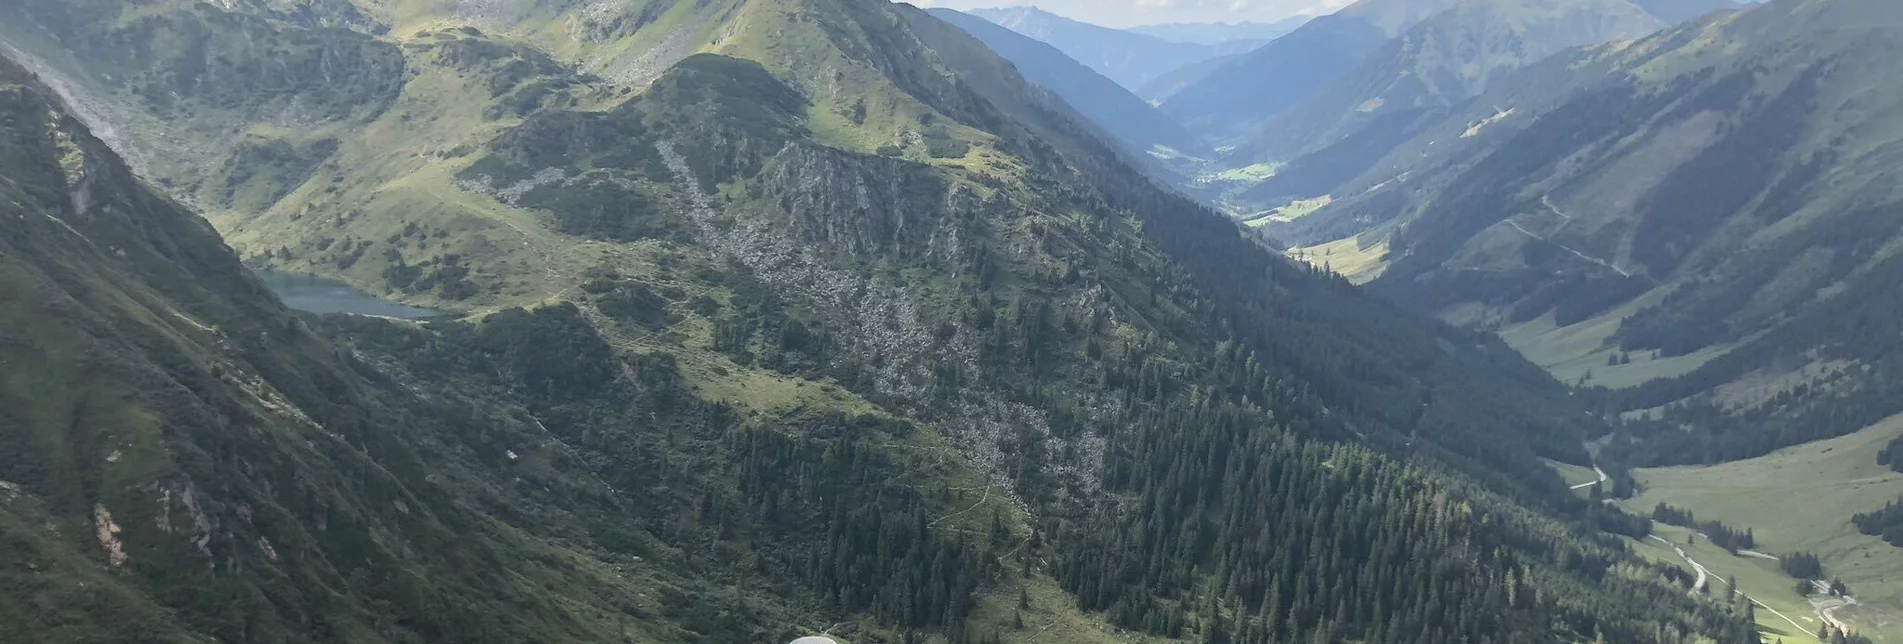 Bergtour Hornfeldspitze 2.277m - Touren-Impression #1 | © Erlebnisregion Schladming-Dachstein